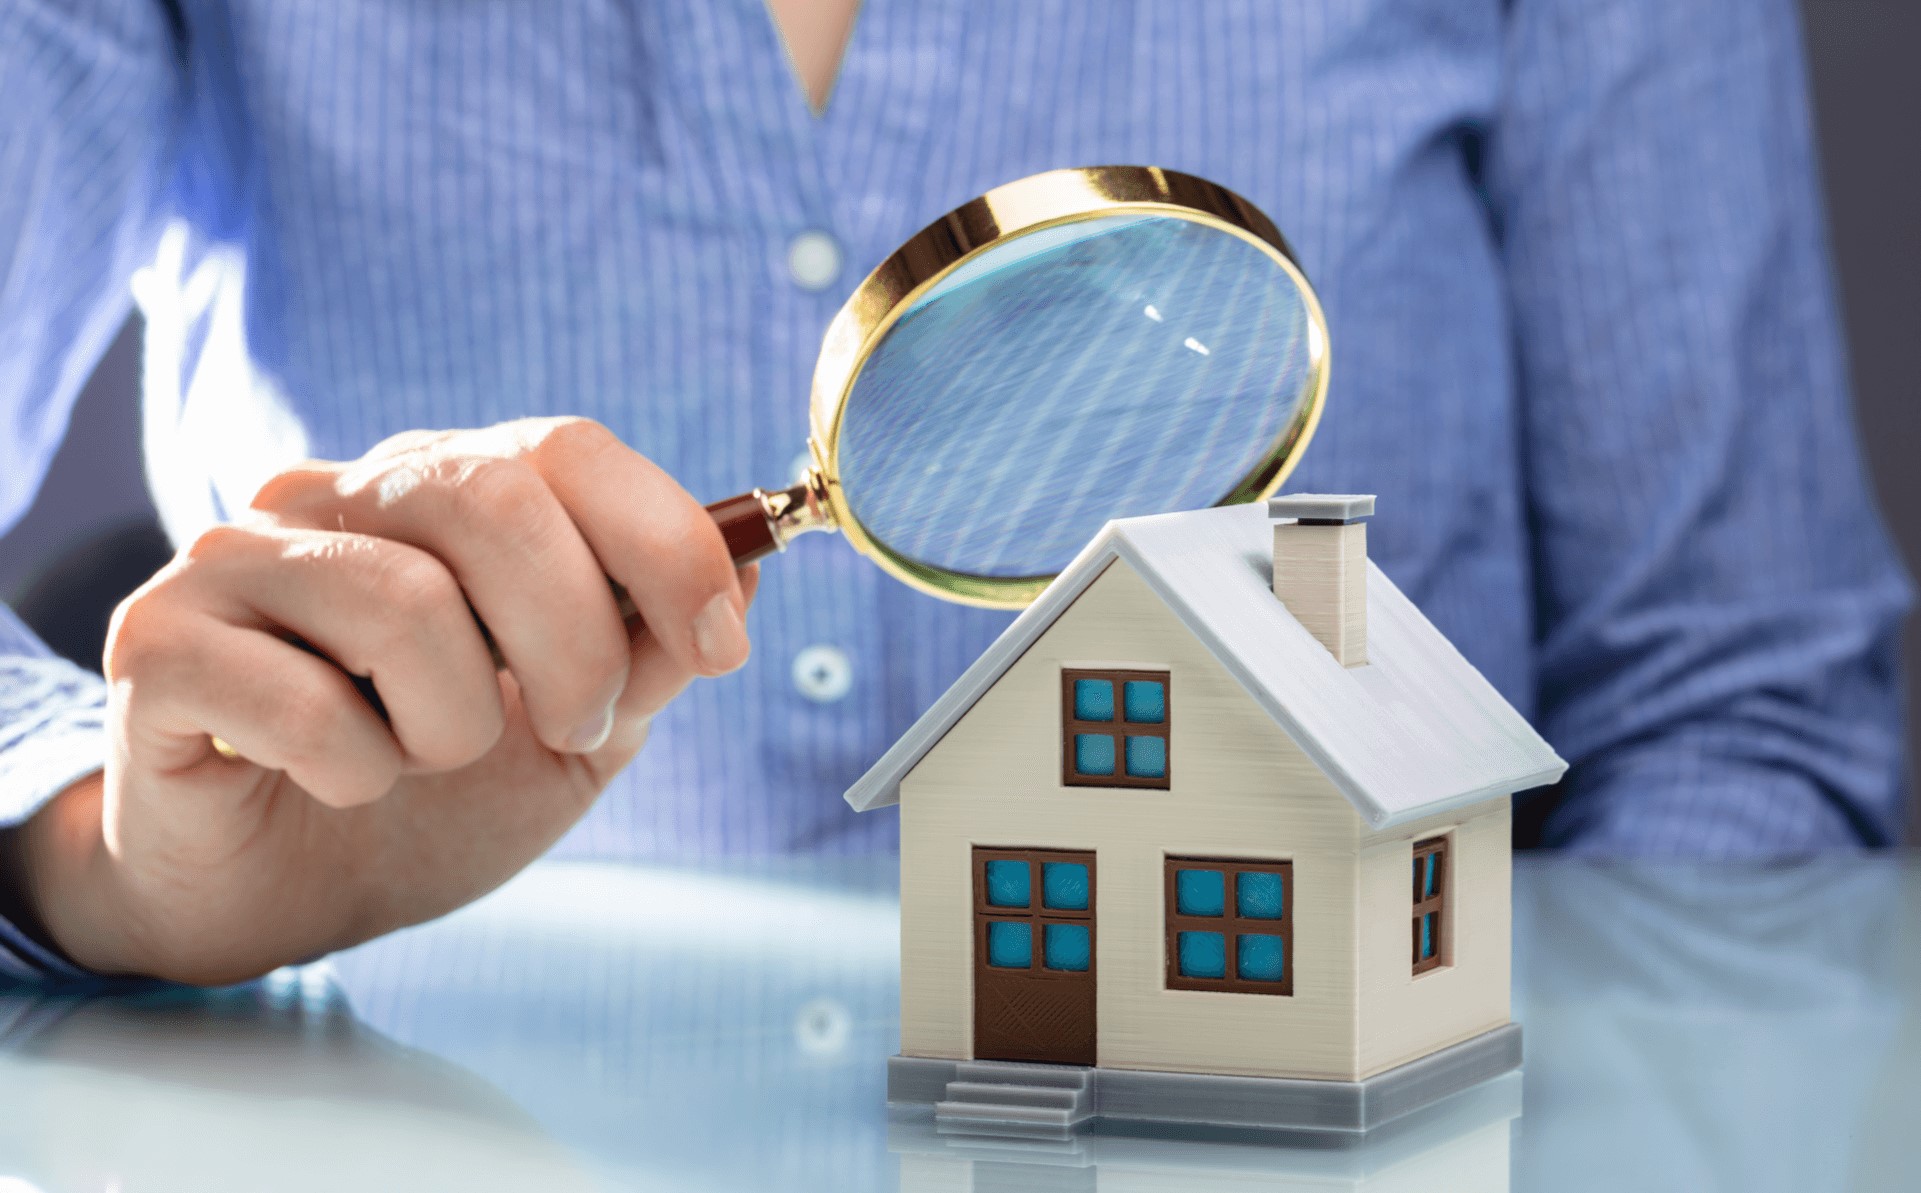 10 preguntas comunes al hacer avalúos inmobiliarios | Vivanuncios